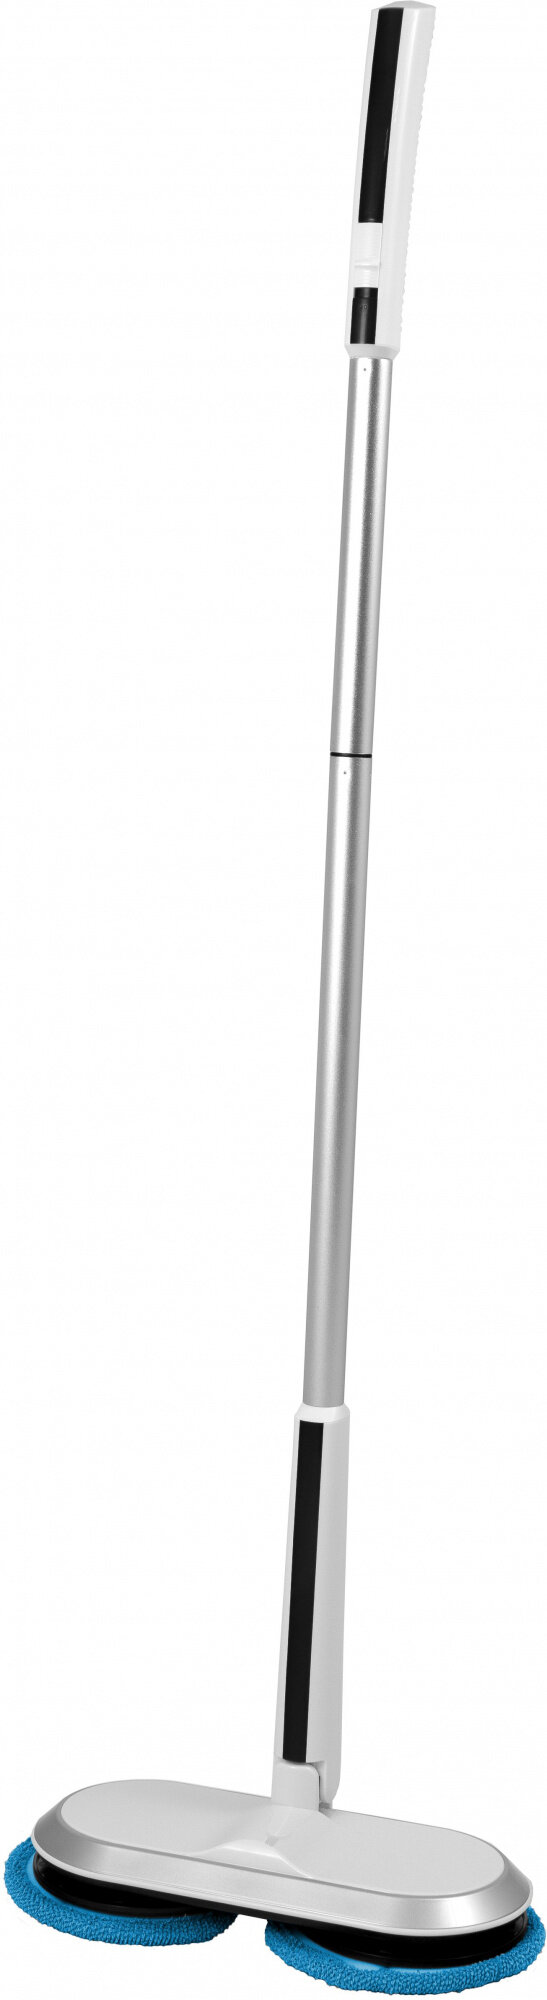 Пылесос-электровеник Xbot RM2 серый